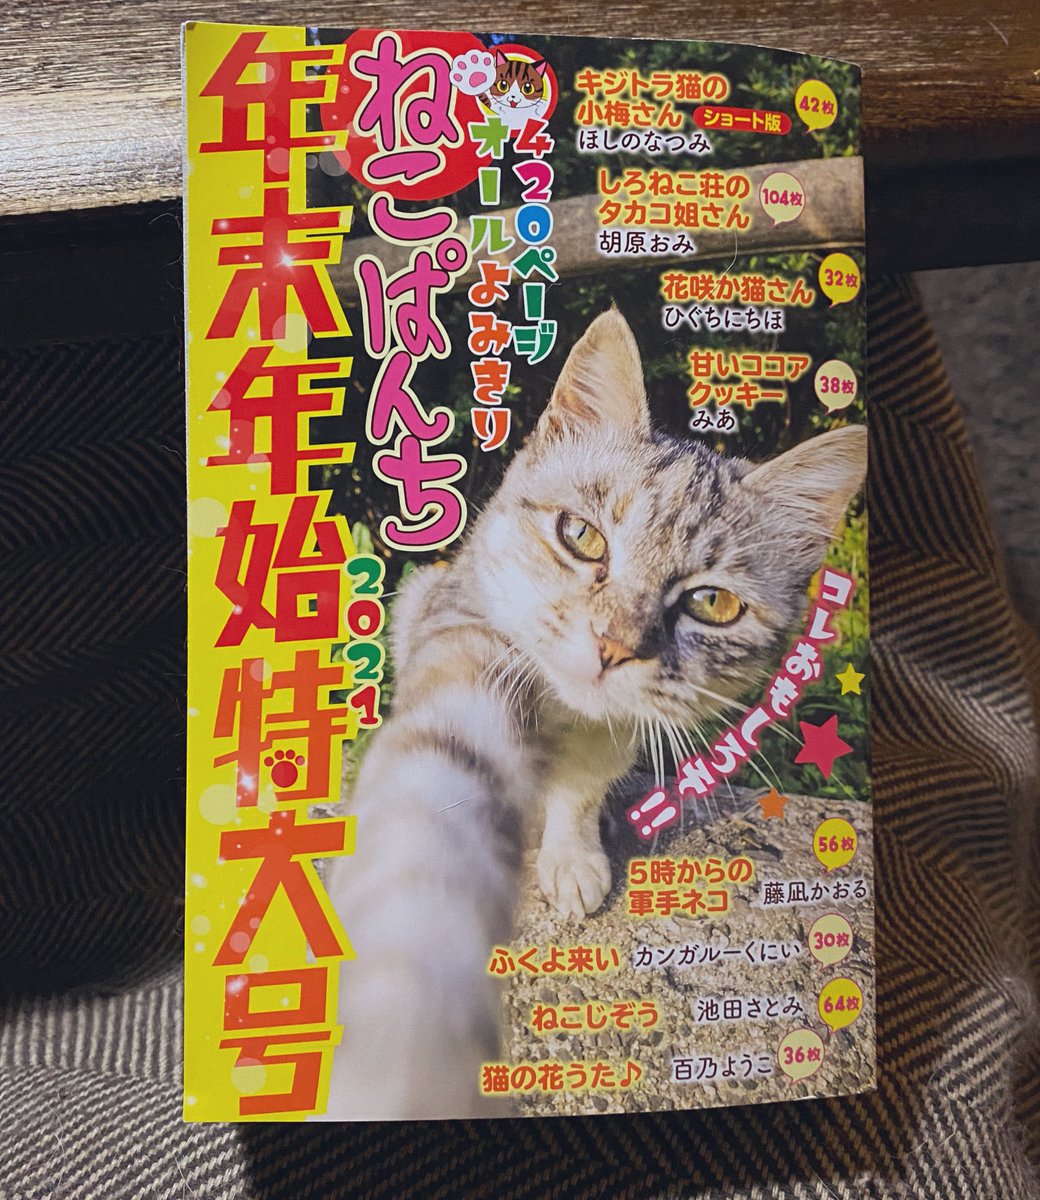 本日発売のねこぱんち年末年始特大号にて花咲か猫さん4話分が再録されております。
作者が描いた覚えのないものがあったりなかったり。新鮮!
よろしくお願いいたします! 